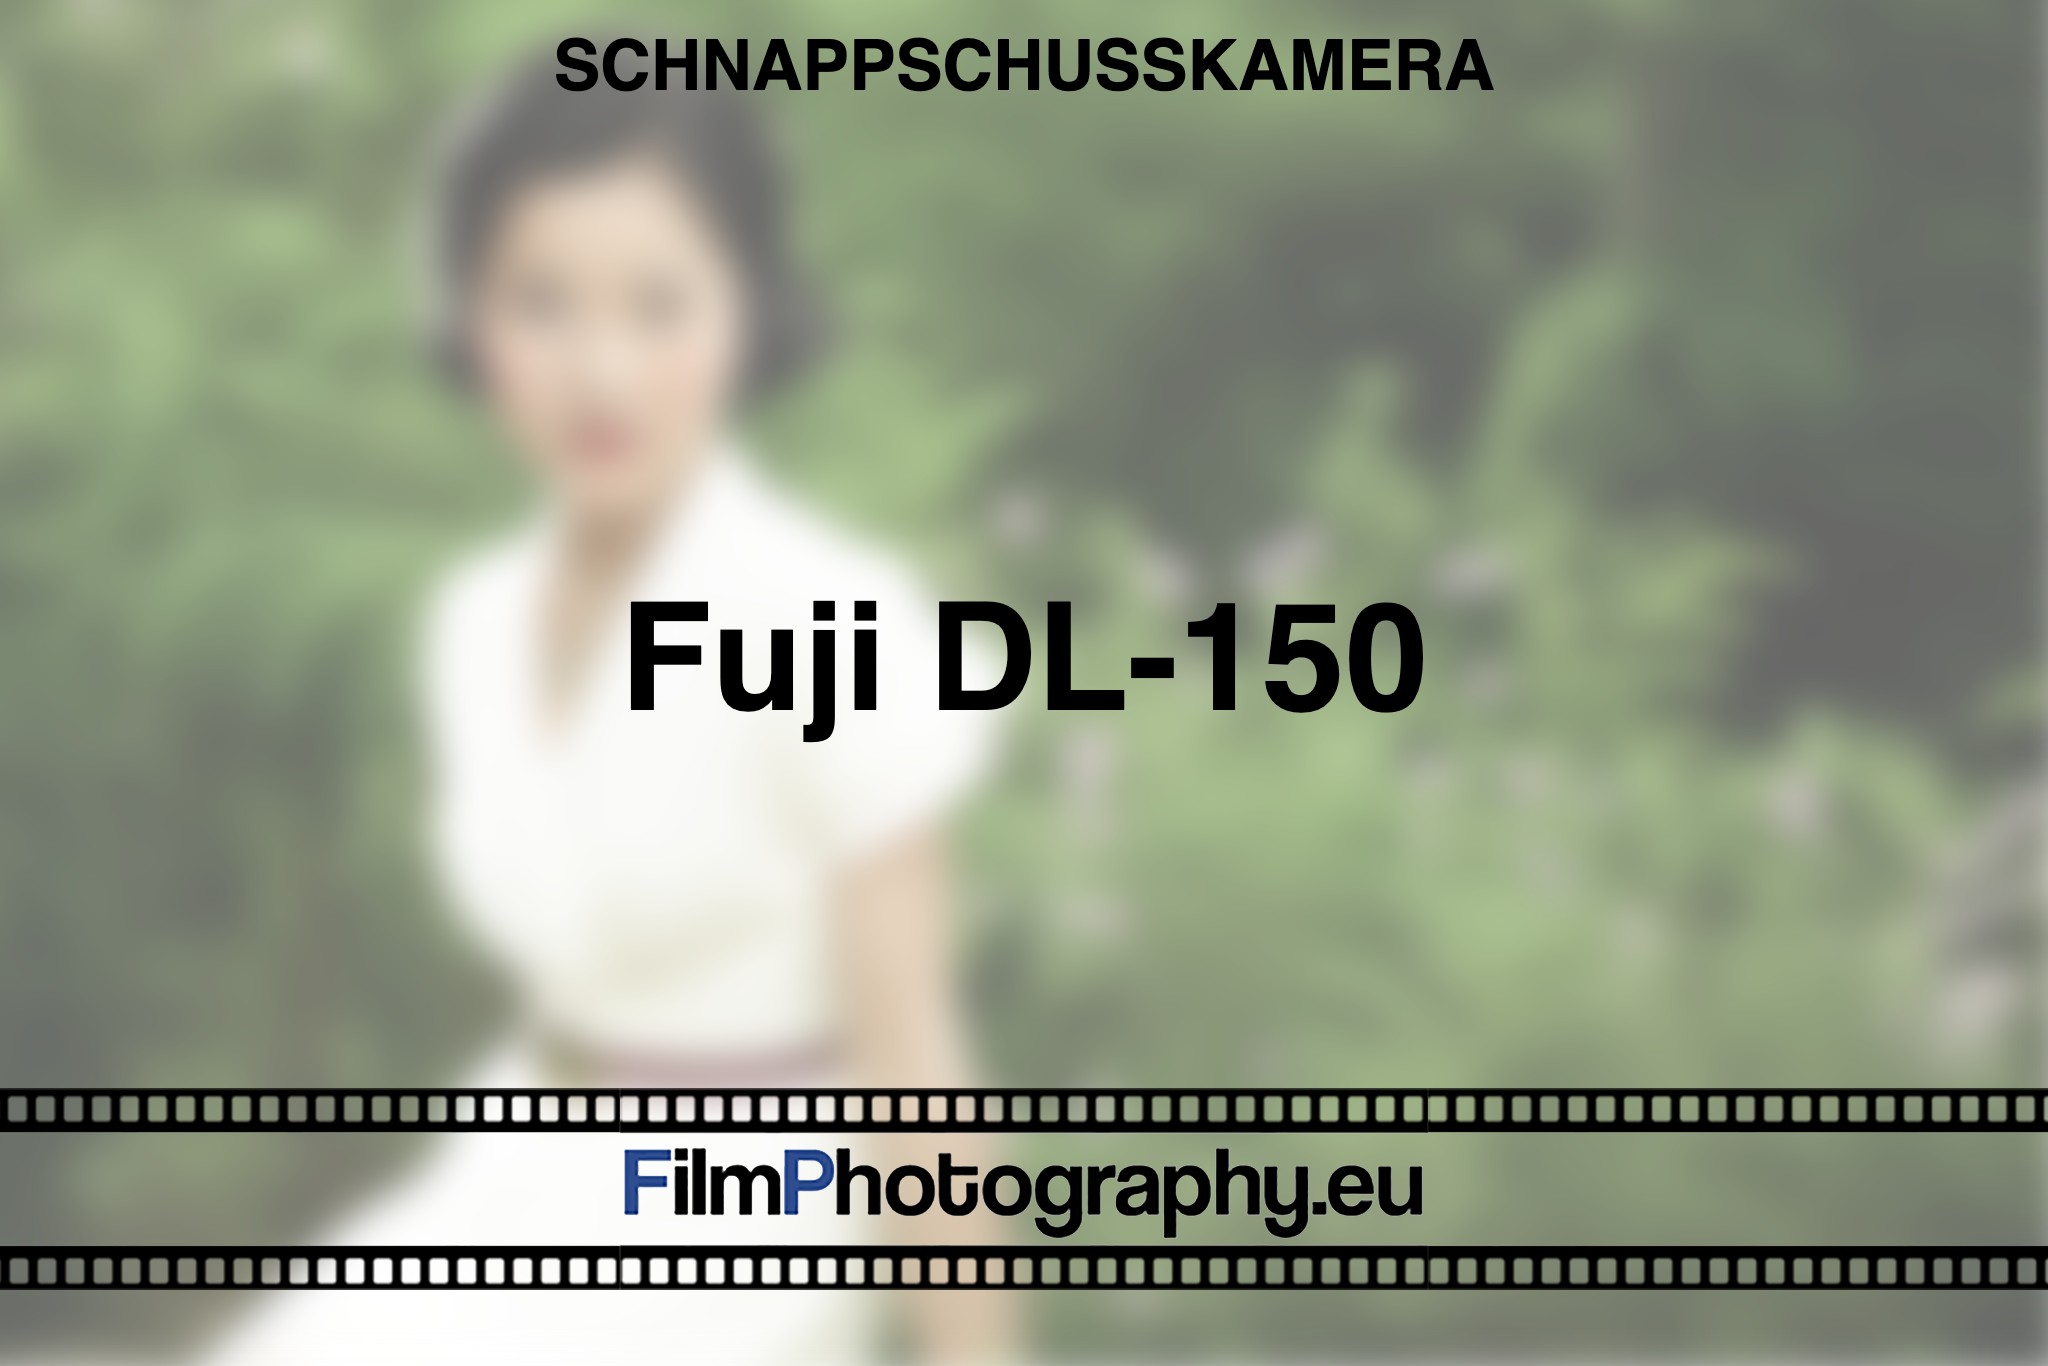 fuji-dl-150-schnappschusskamera-bnv